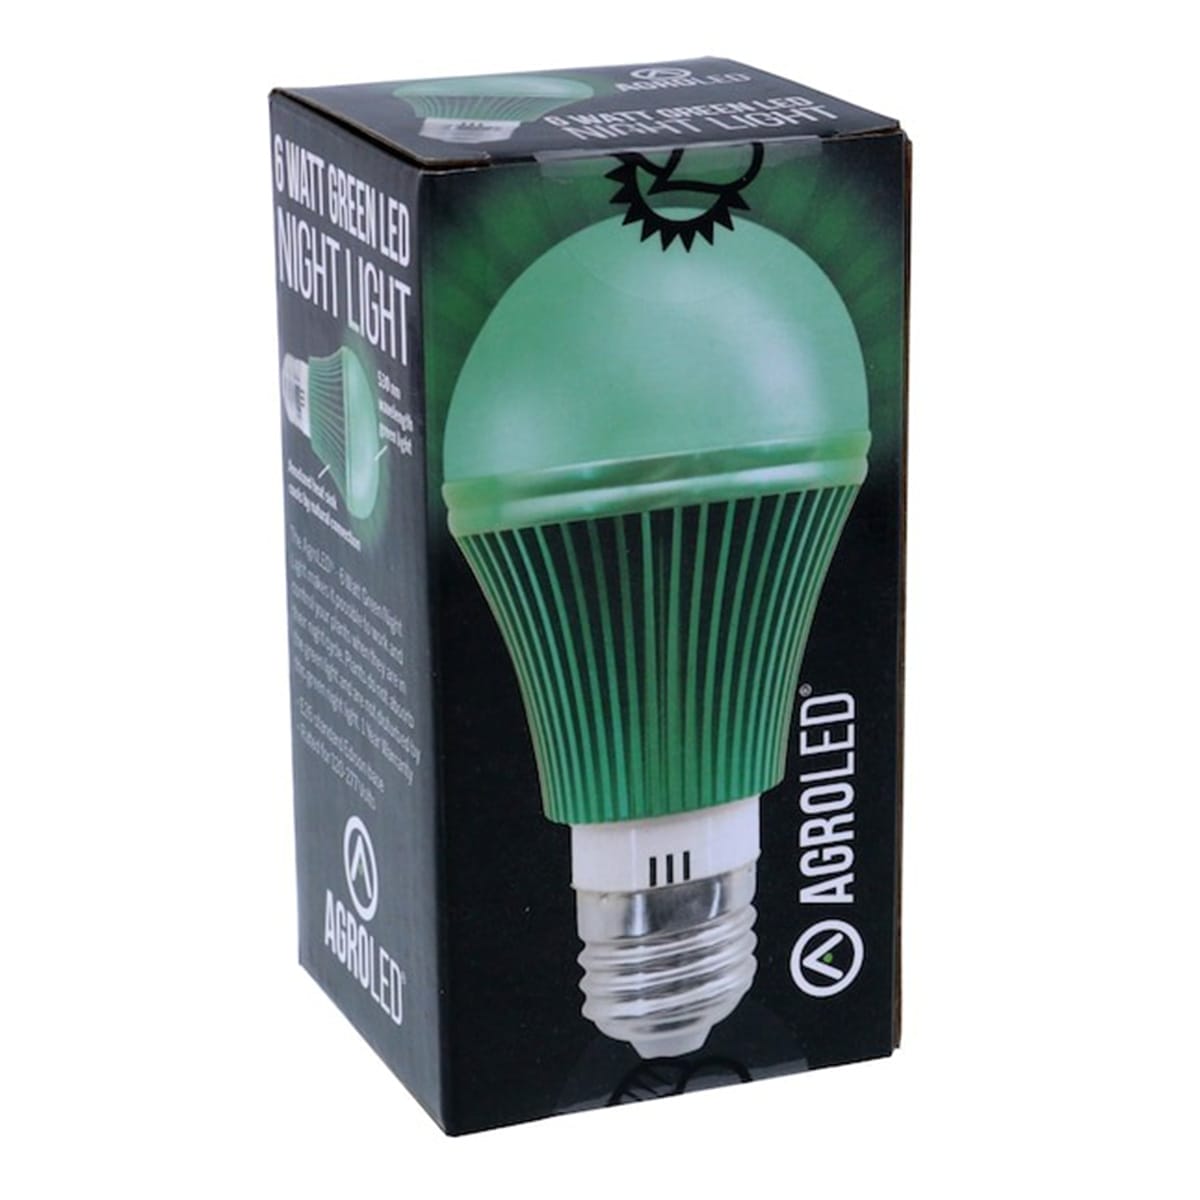 AgroLED 6 Watt Green LED Night Light Package